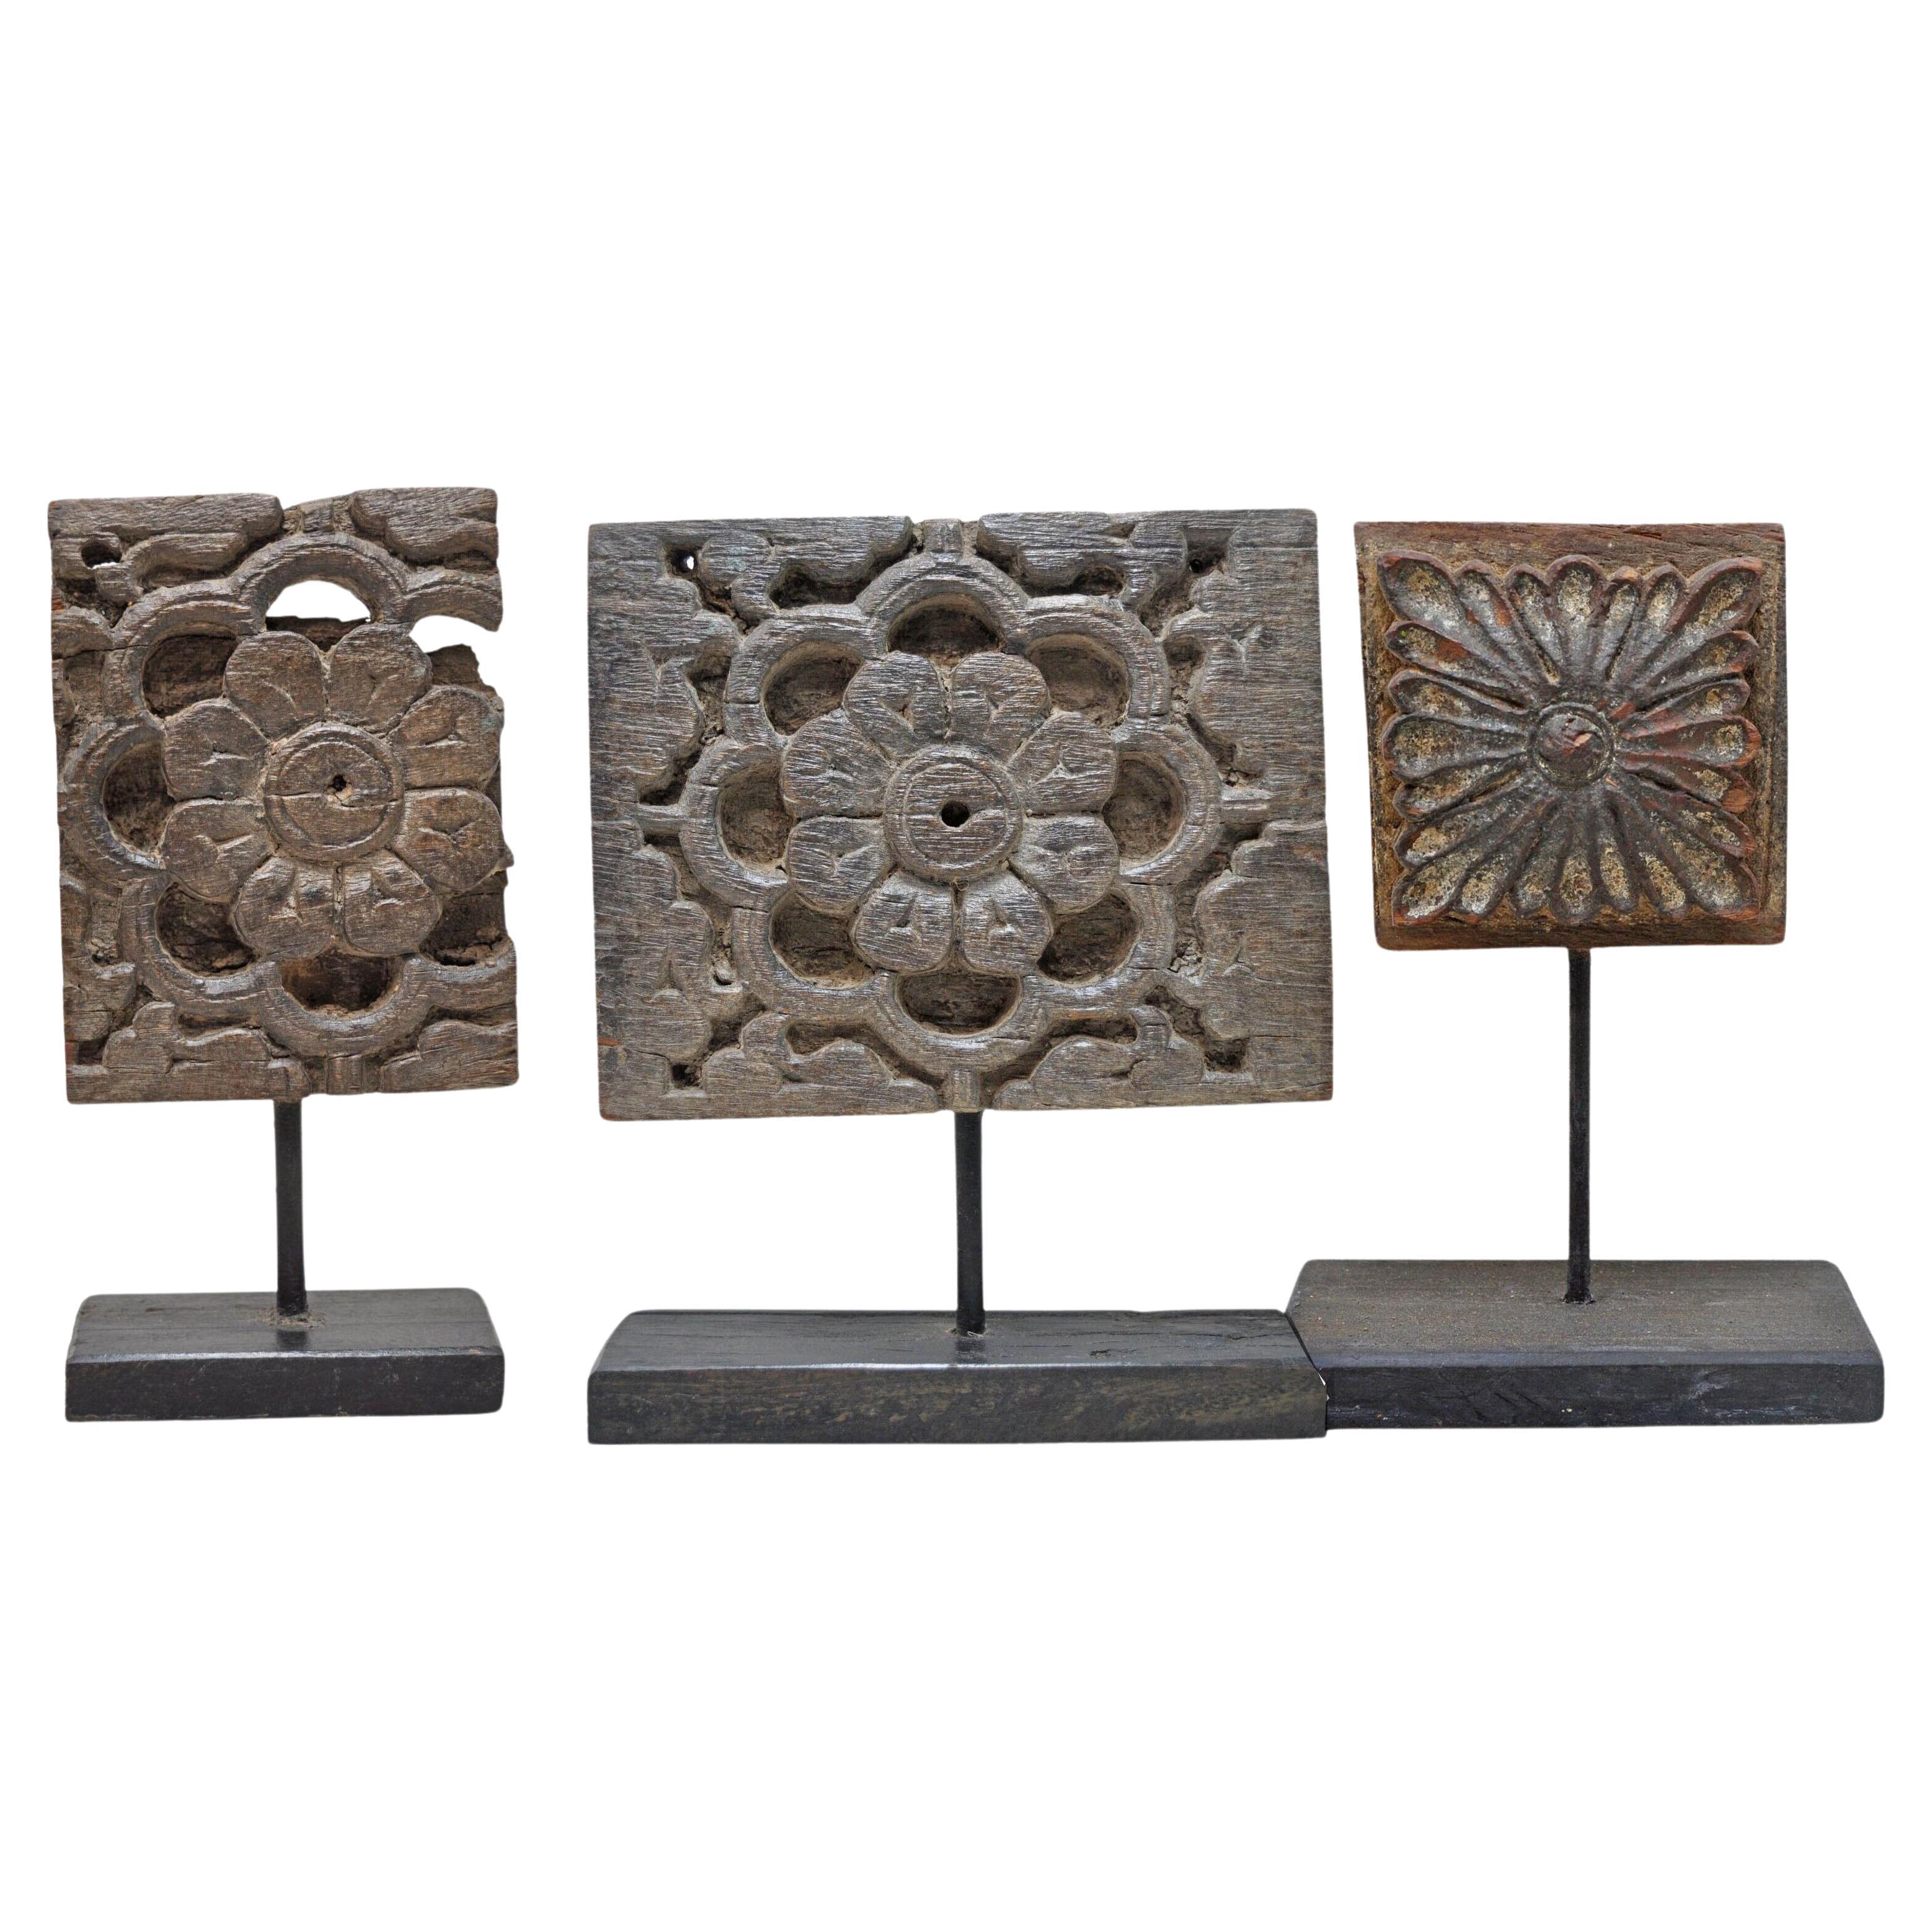 Kollektion von 3 antiken südasiatischen architektonischen Fragmenten auf Ständern